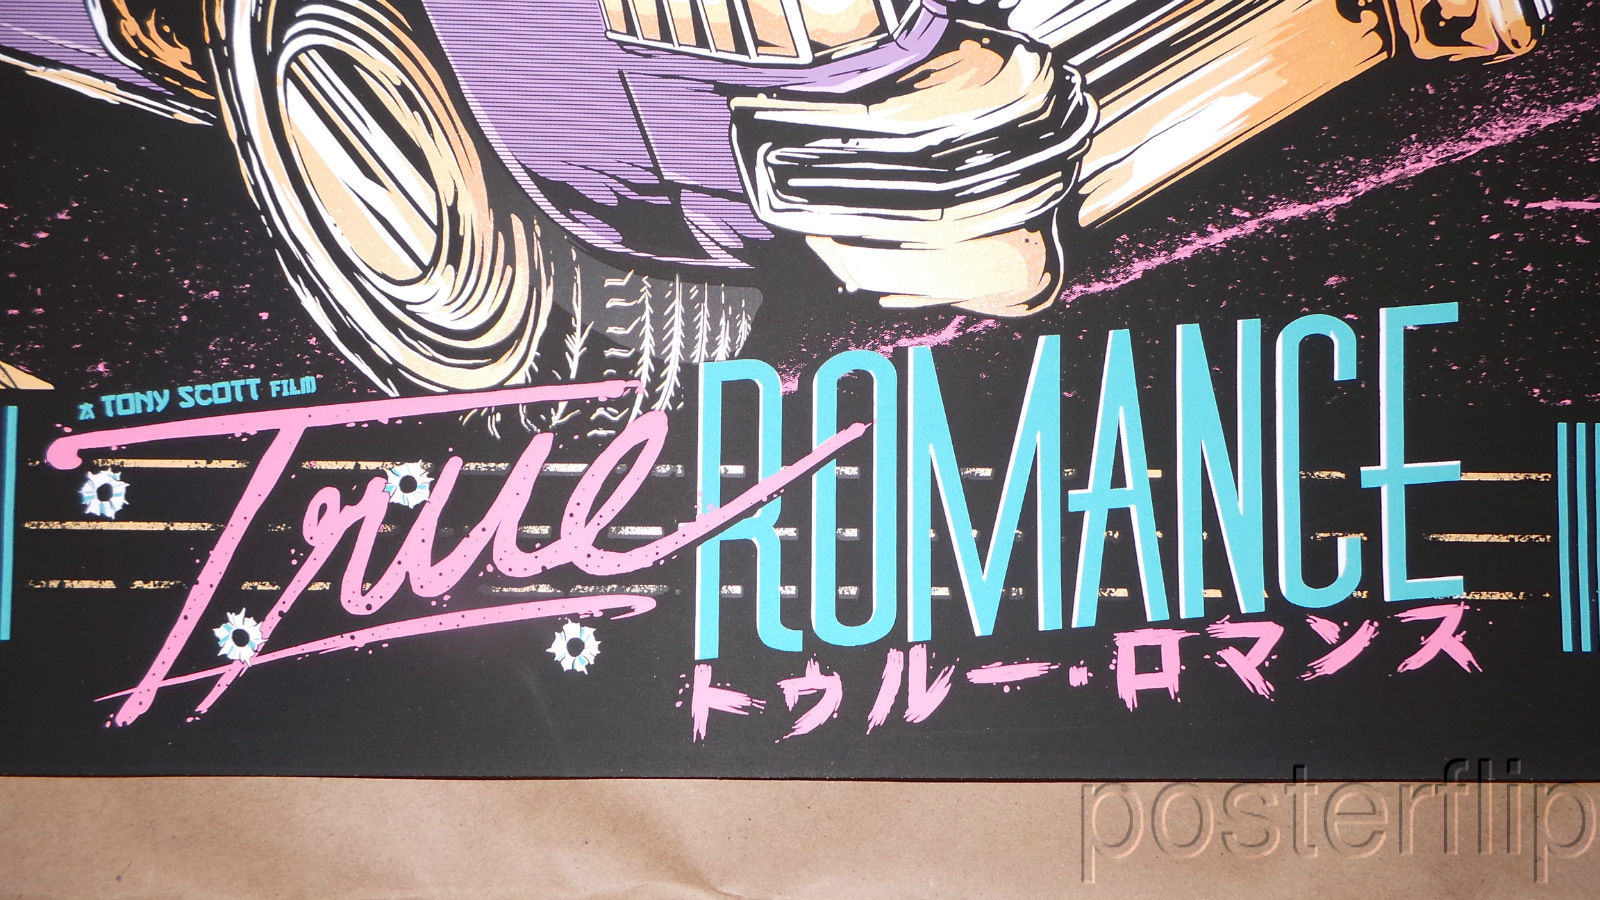 Matt Ryan Tobin - True Romance 36x24 Live Fast Die Young Variant Poster N'd xx/35